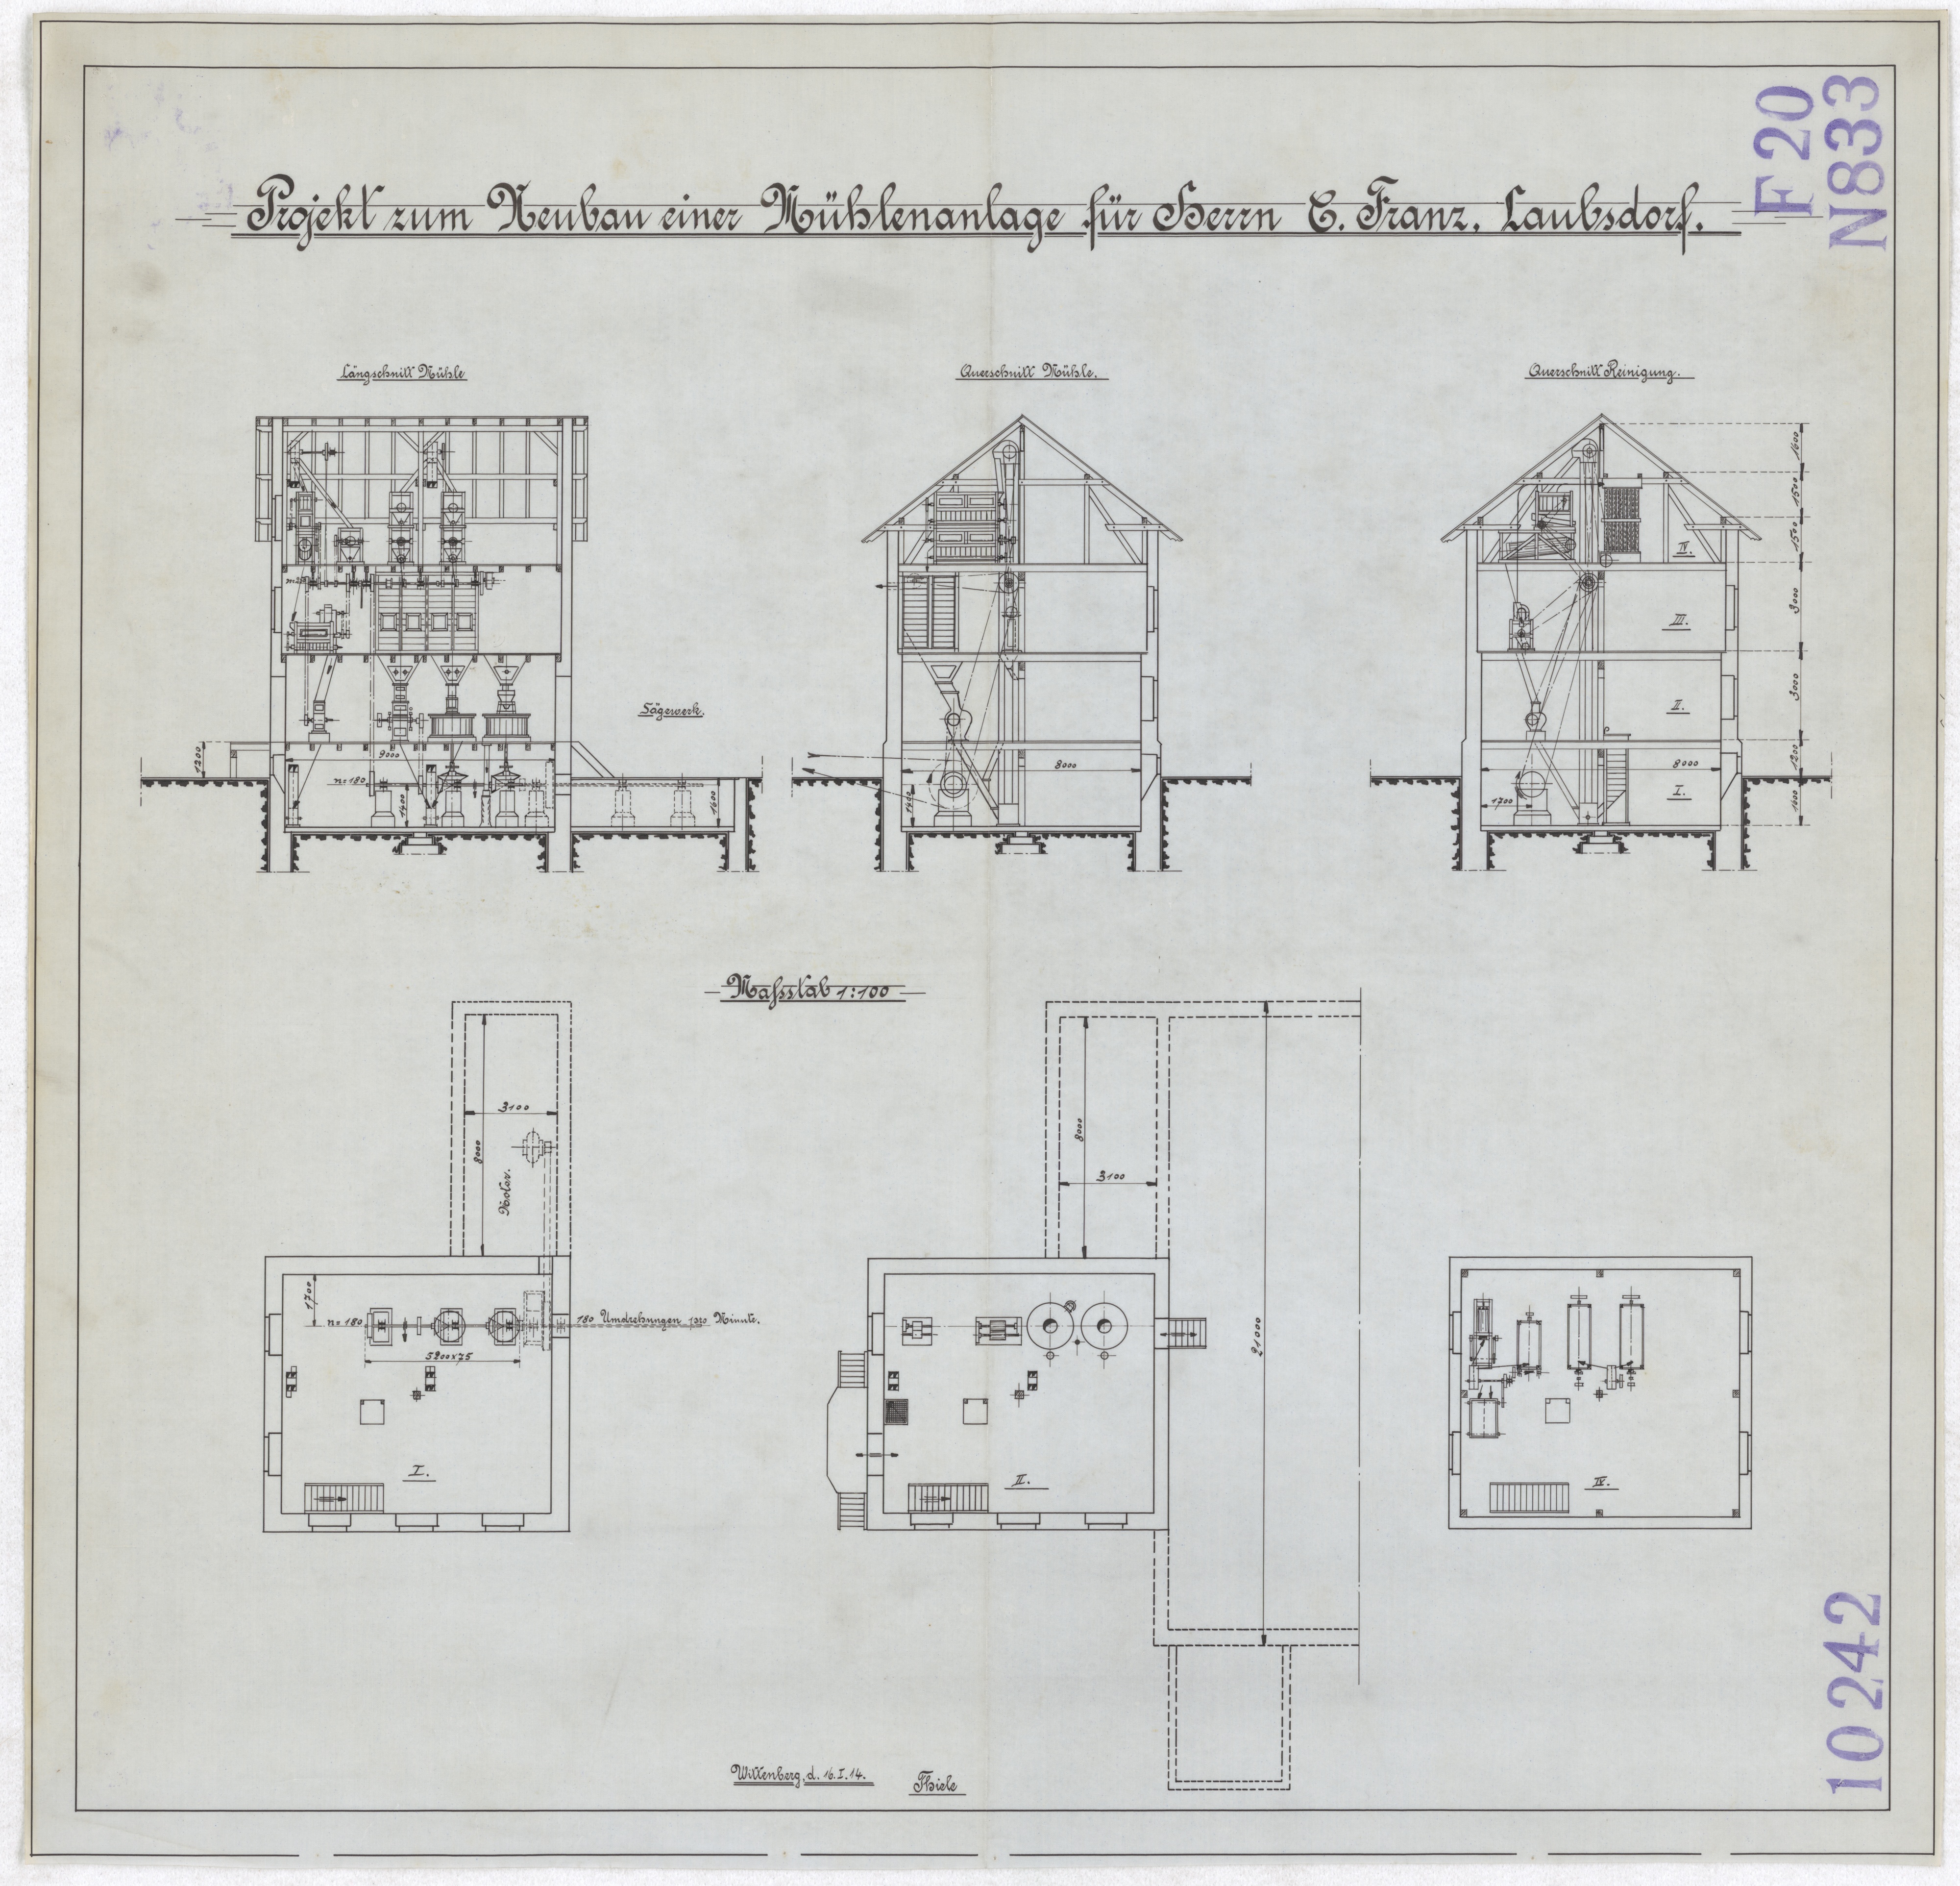 Technische Zeichnung : Projekt zum Neubau einer Mühlenanlage für Herrn C. Franz, Laubsdorf (Stiftung Deutsches Technikmuseum Berlin CC BY-SA)